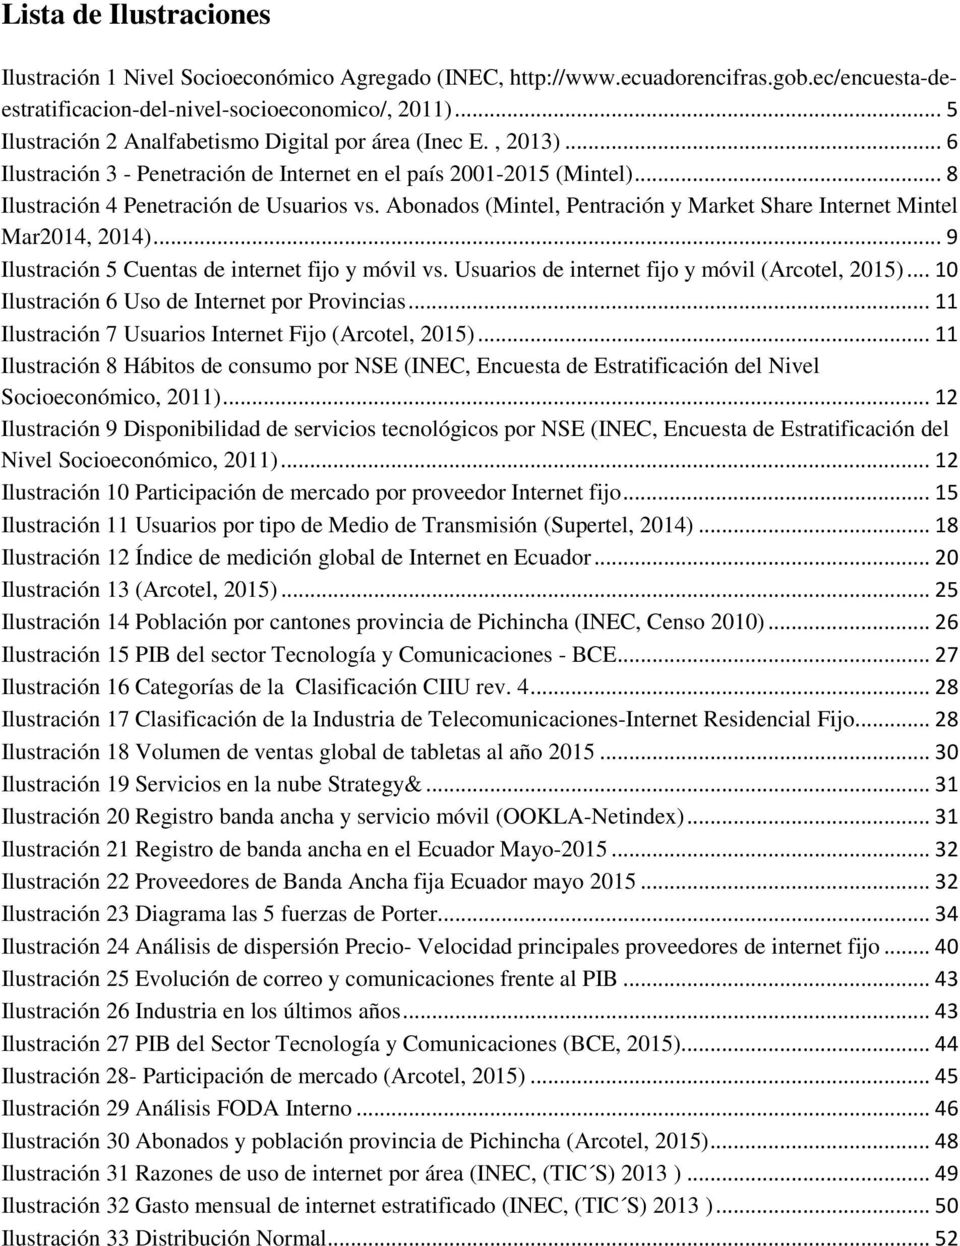 Abonados (Mintel, Pentración y Market Share Internet Mintel Mar2014, 2014)... 9 Ilustración 5 Cuentas de internet fijo y móvil vs. Usuarios de internet fijo y móvil (Arcotel, 2015).